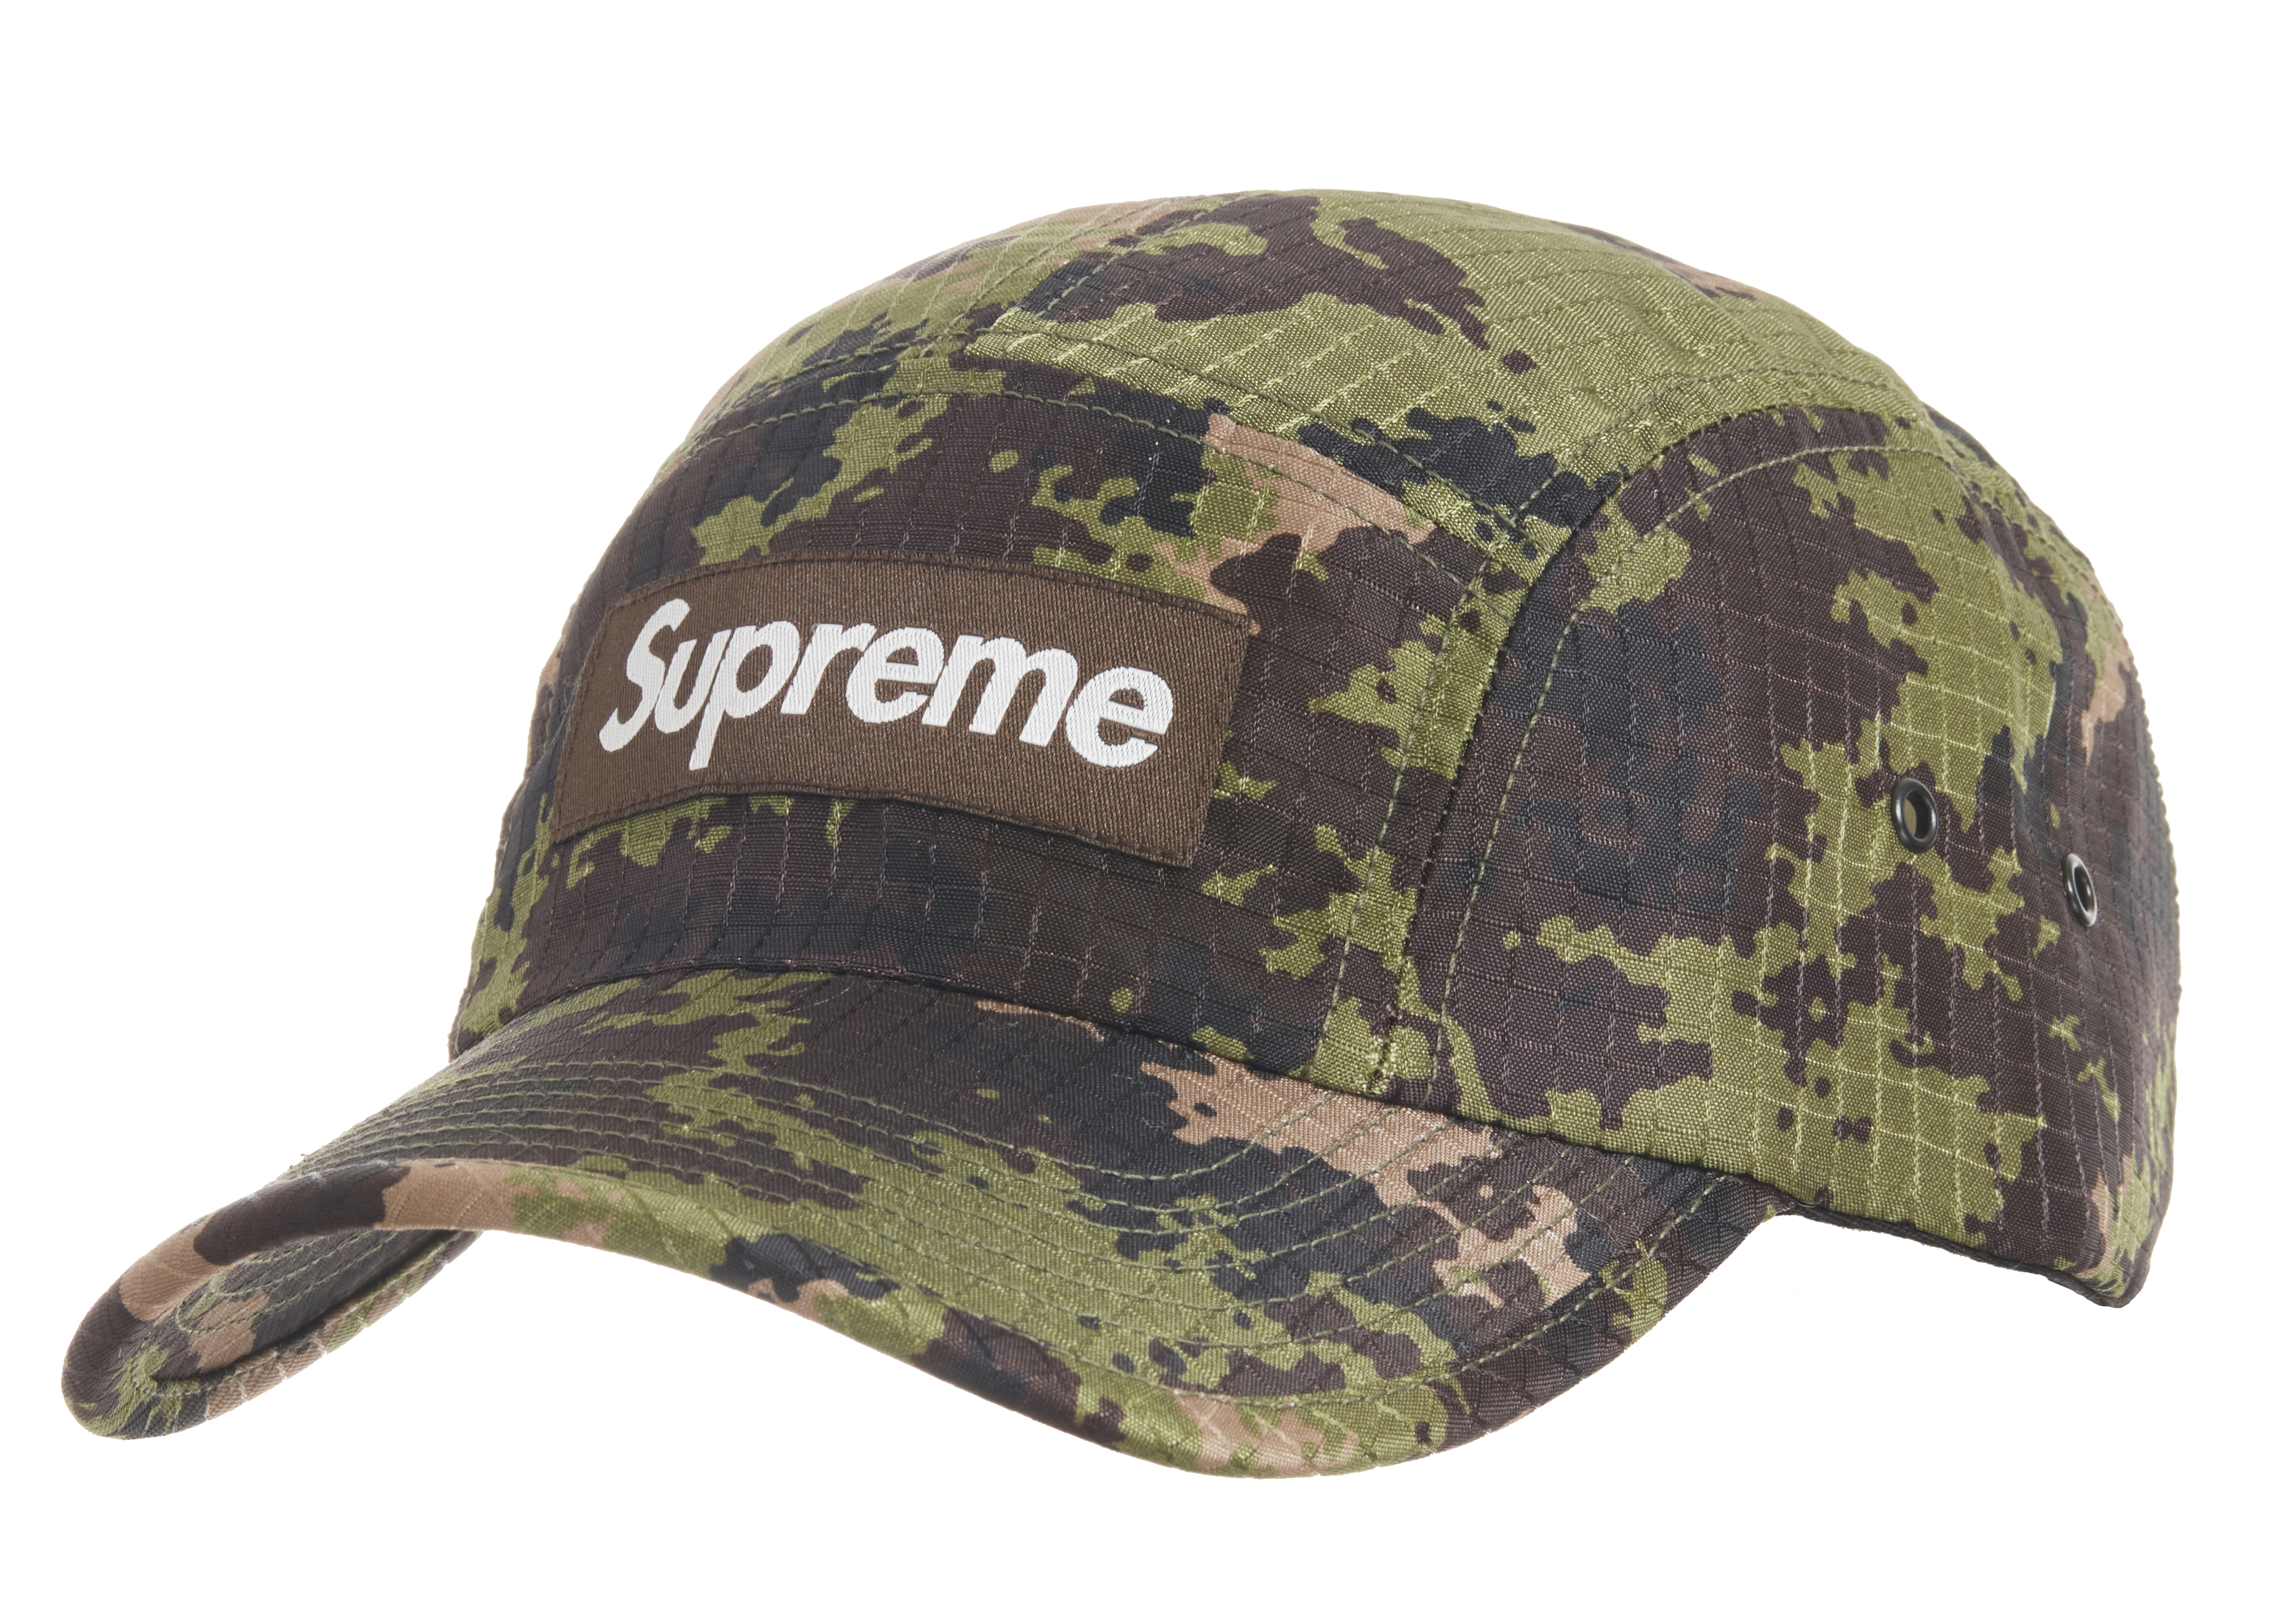 Vintage cap supreme camp   Gem